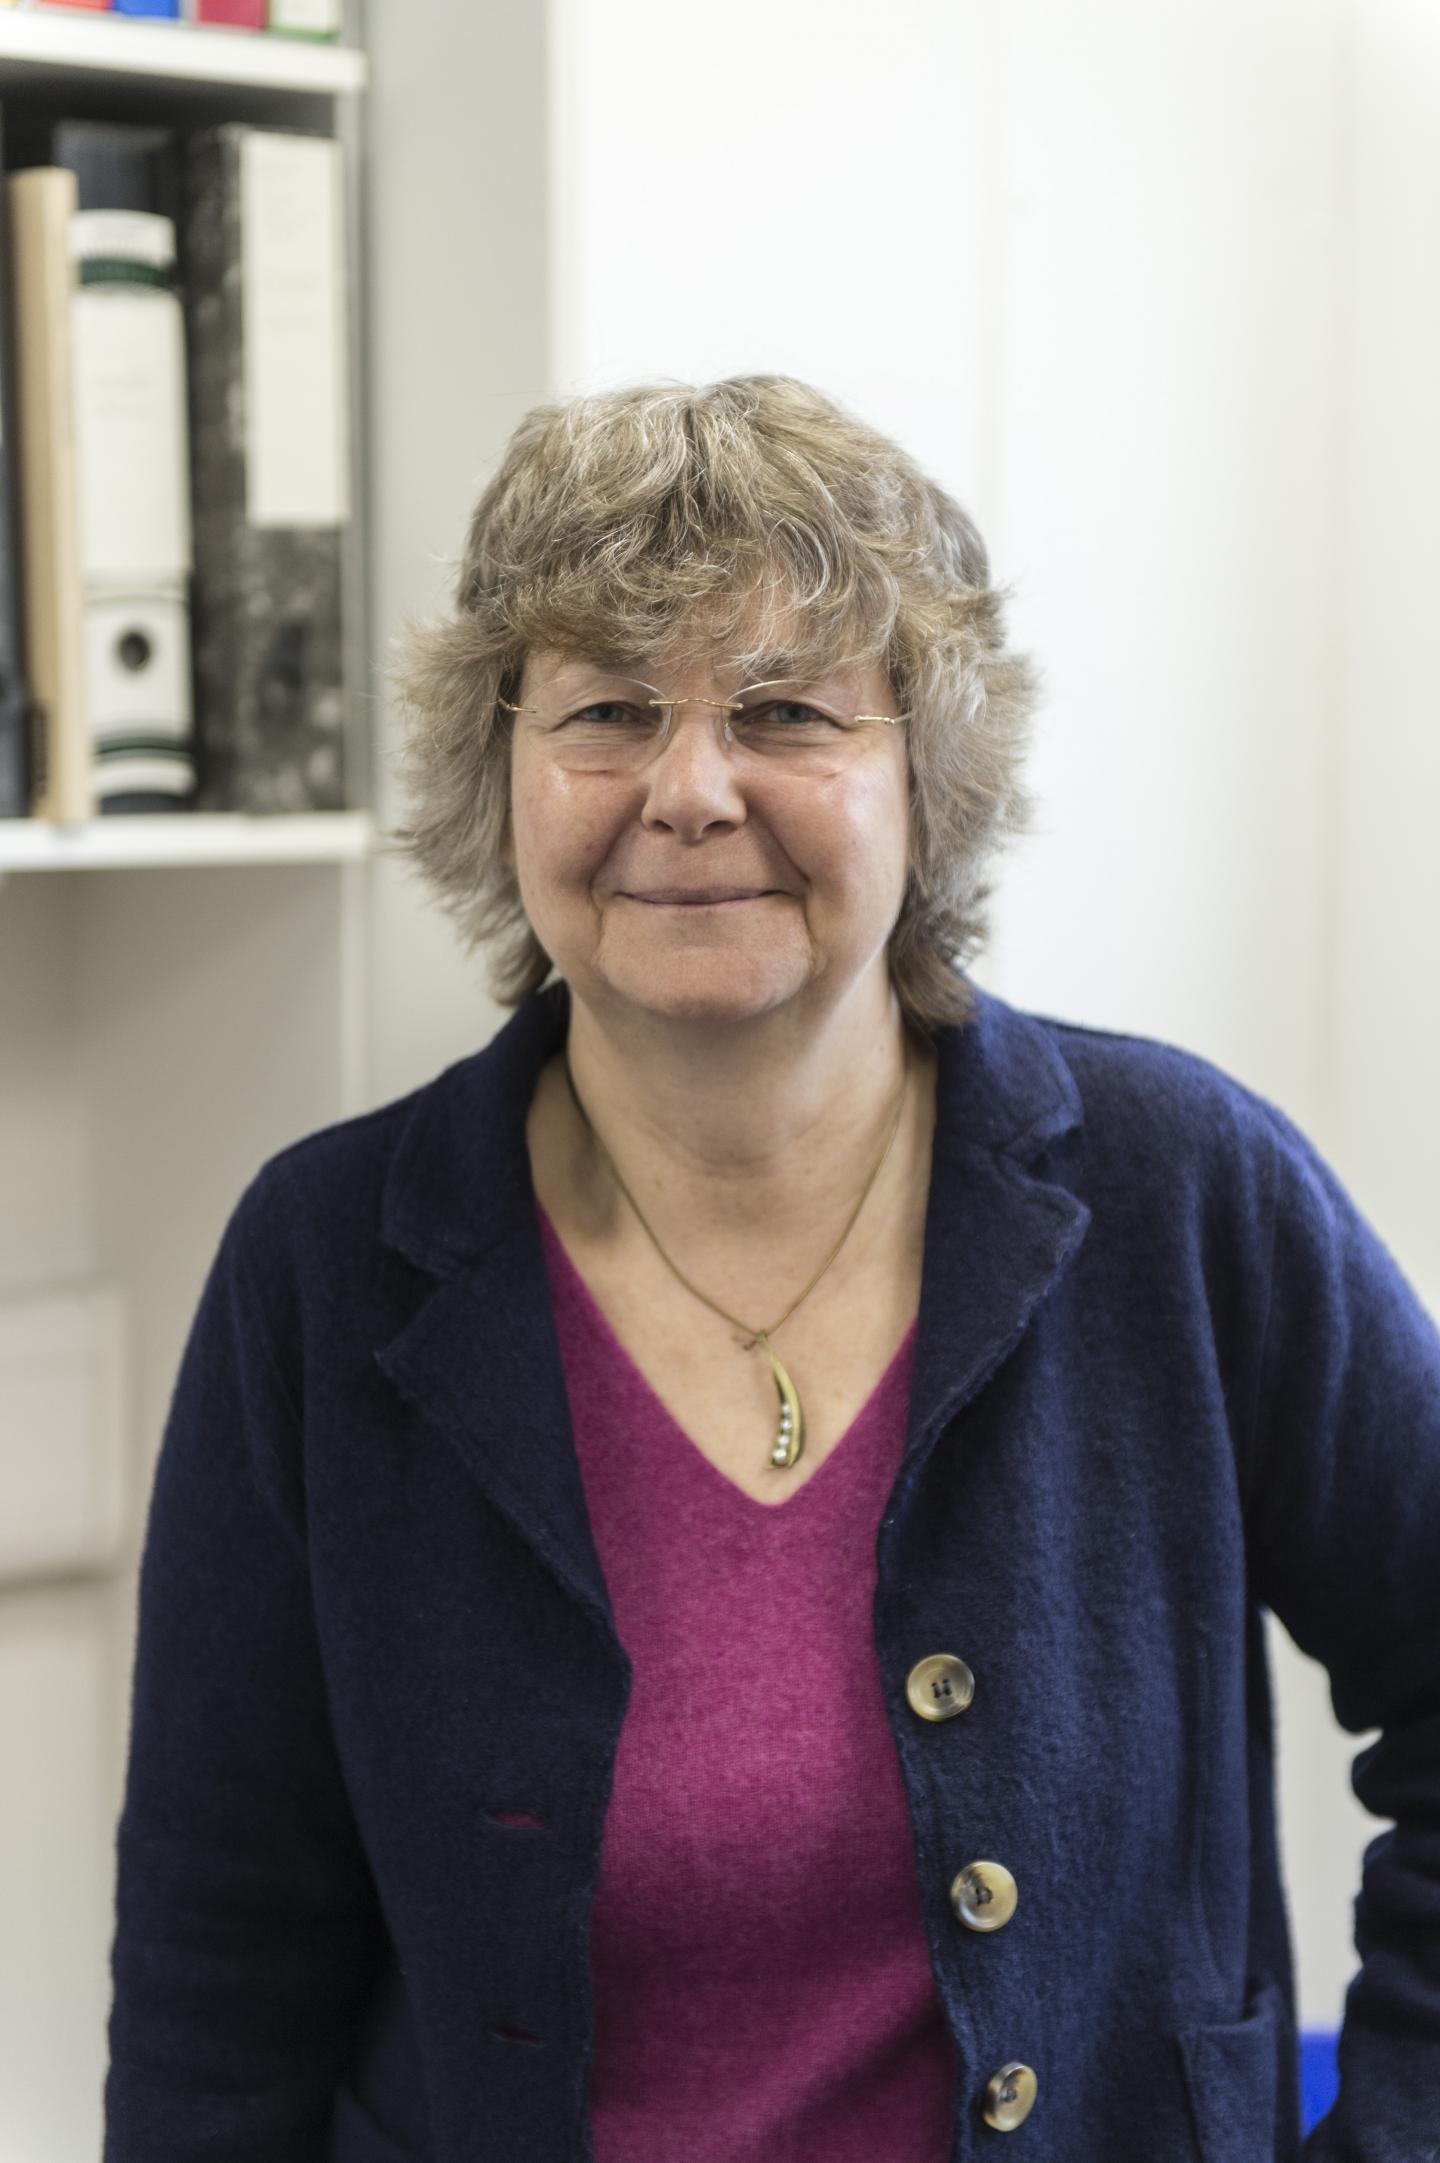 Professor Alison Smith FRS, John Innes Centre